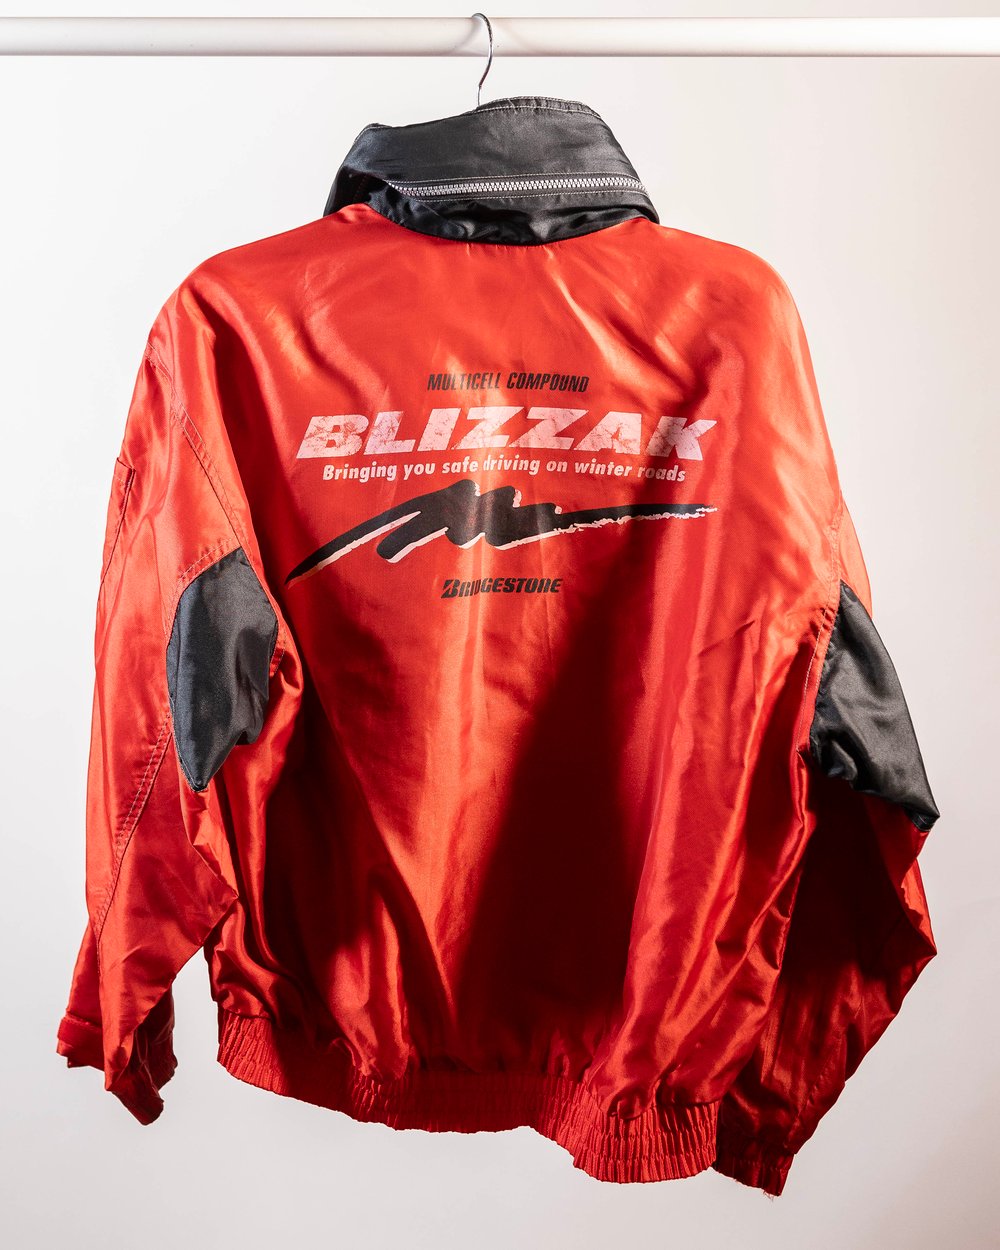 Bridgestone Blizzak Jacket (Large)